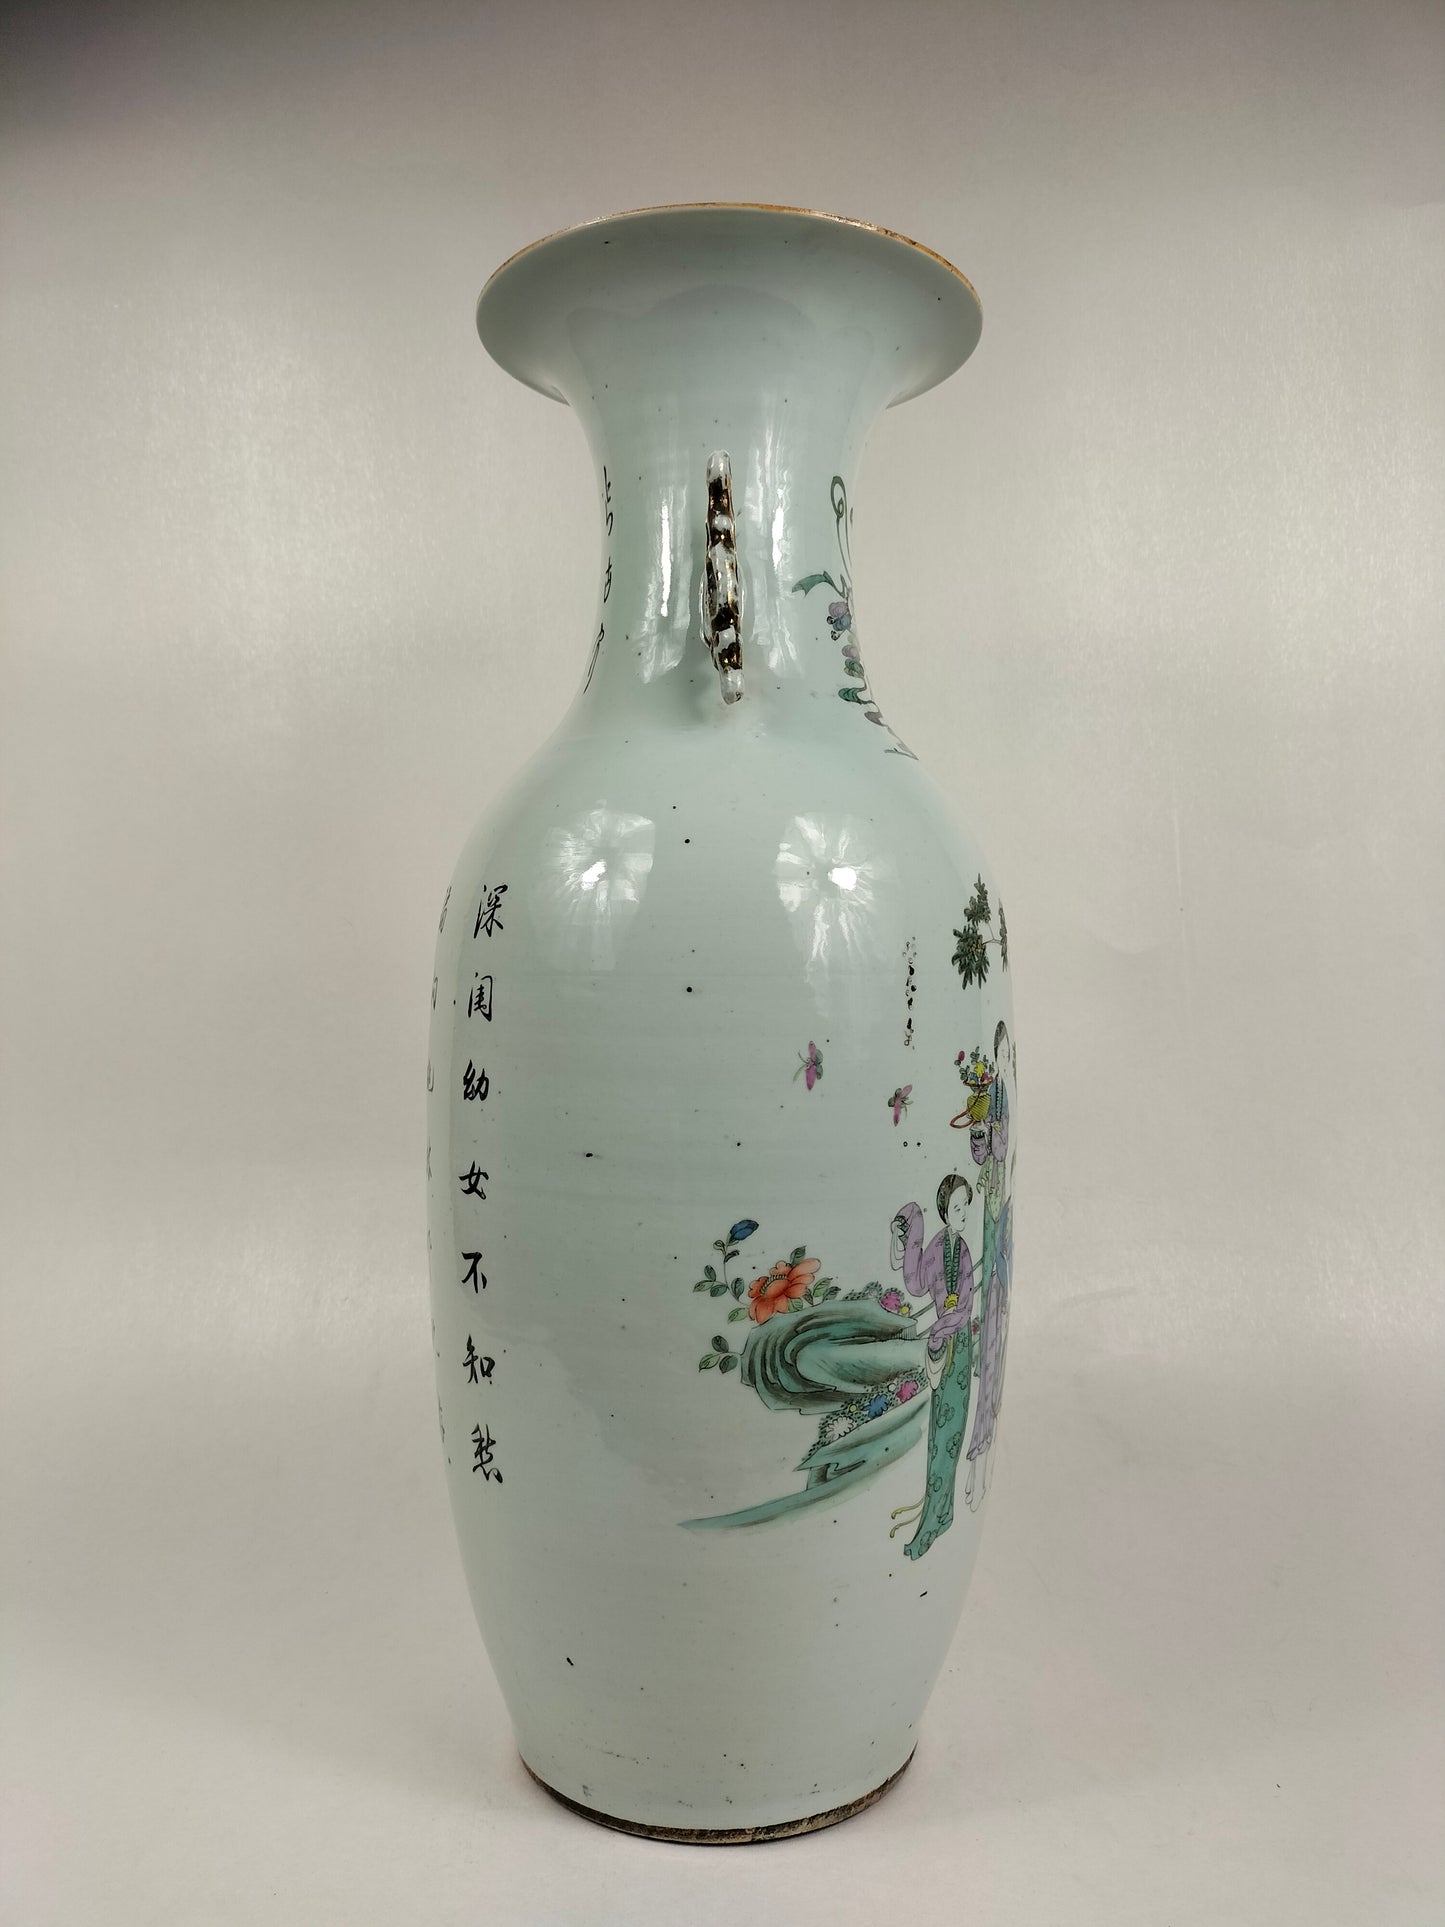 Grande vaso chinês antigo com cena de jardim / Período da República (1912-1949)